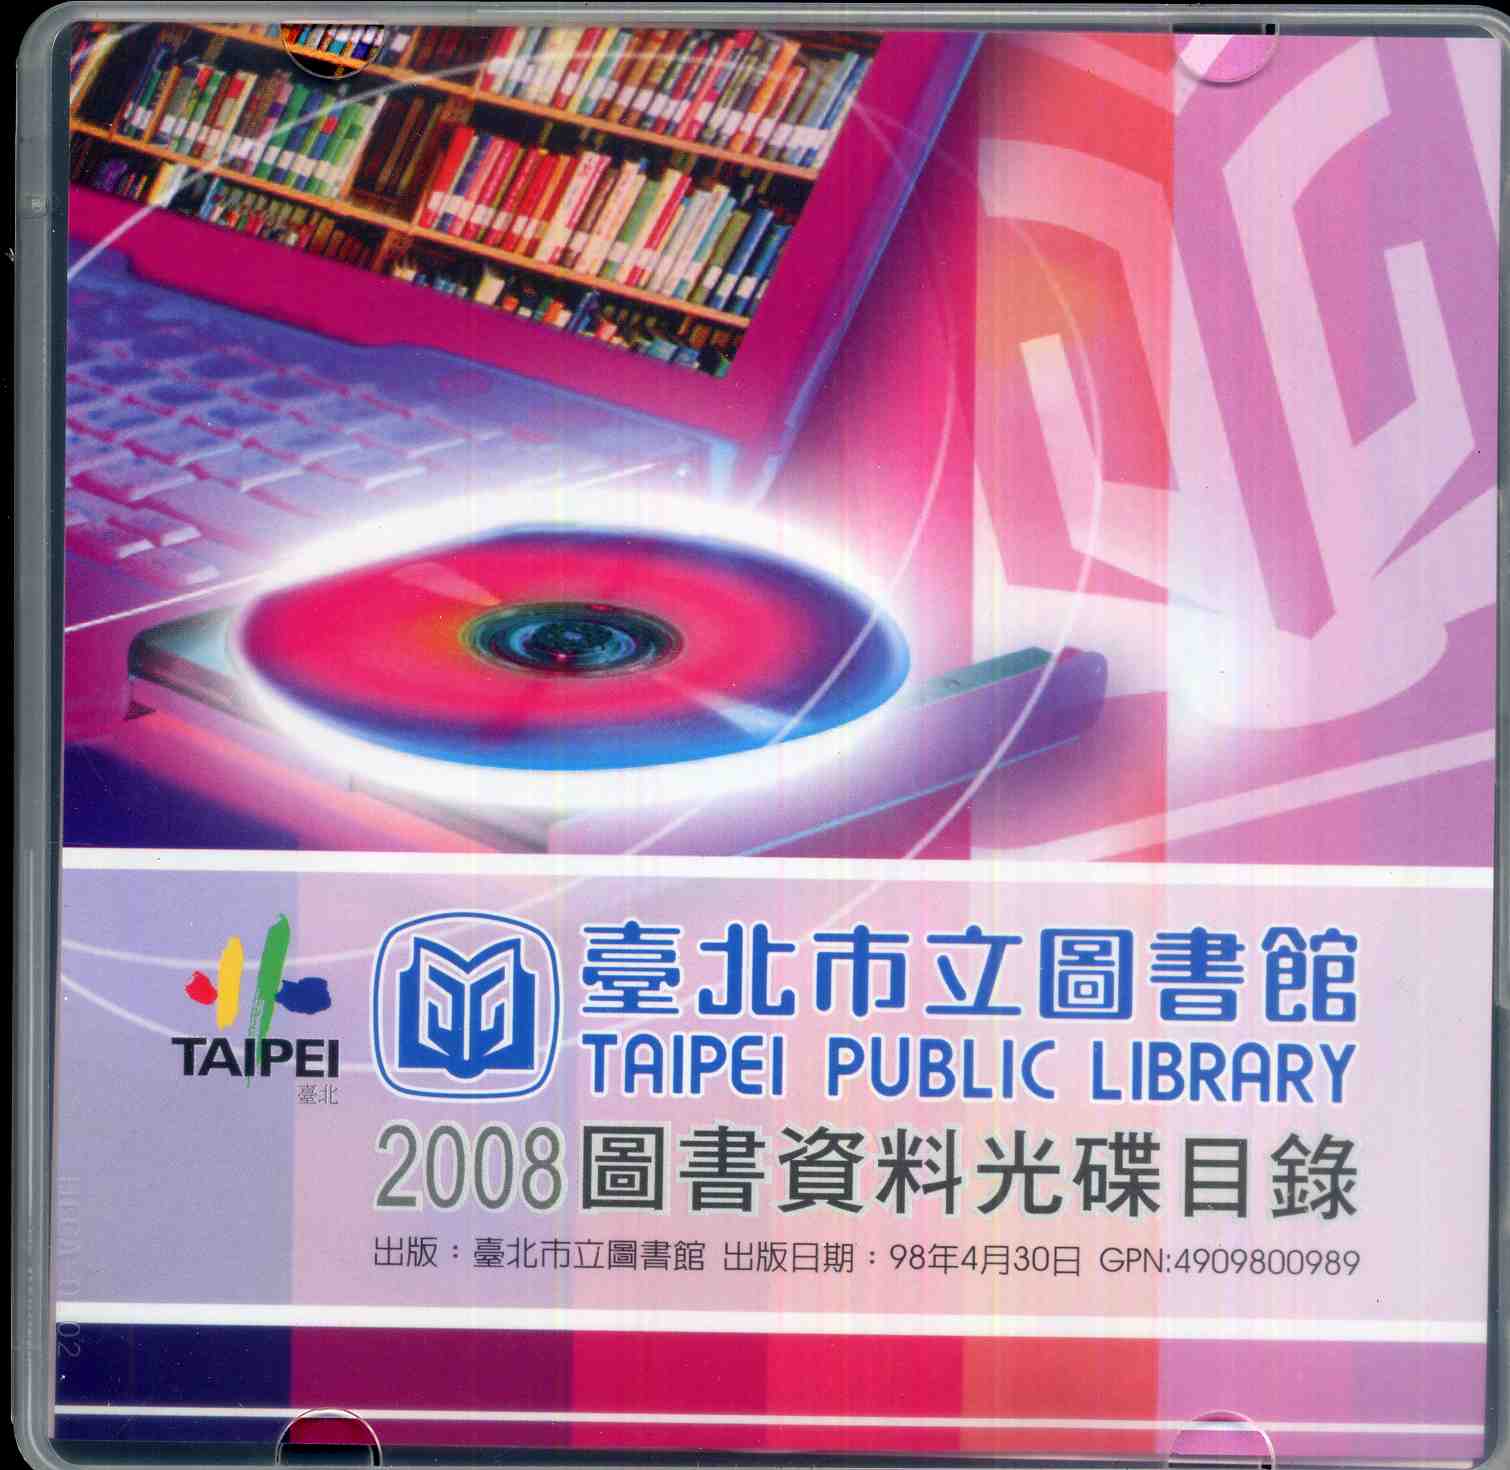 臺北市立圖書館2008圖書資料光碟目錄